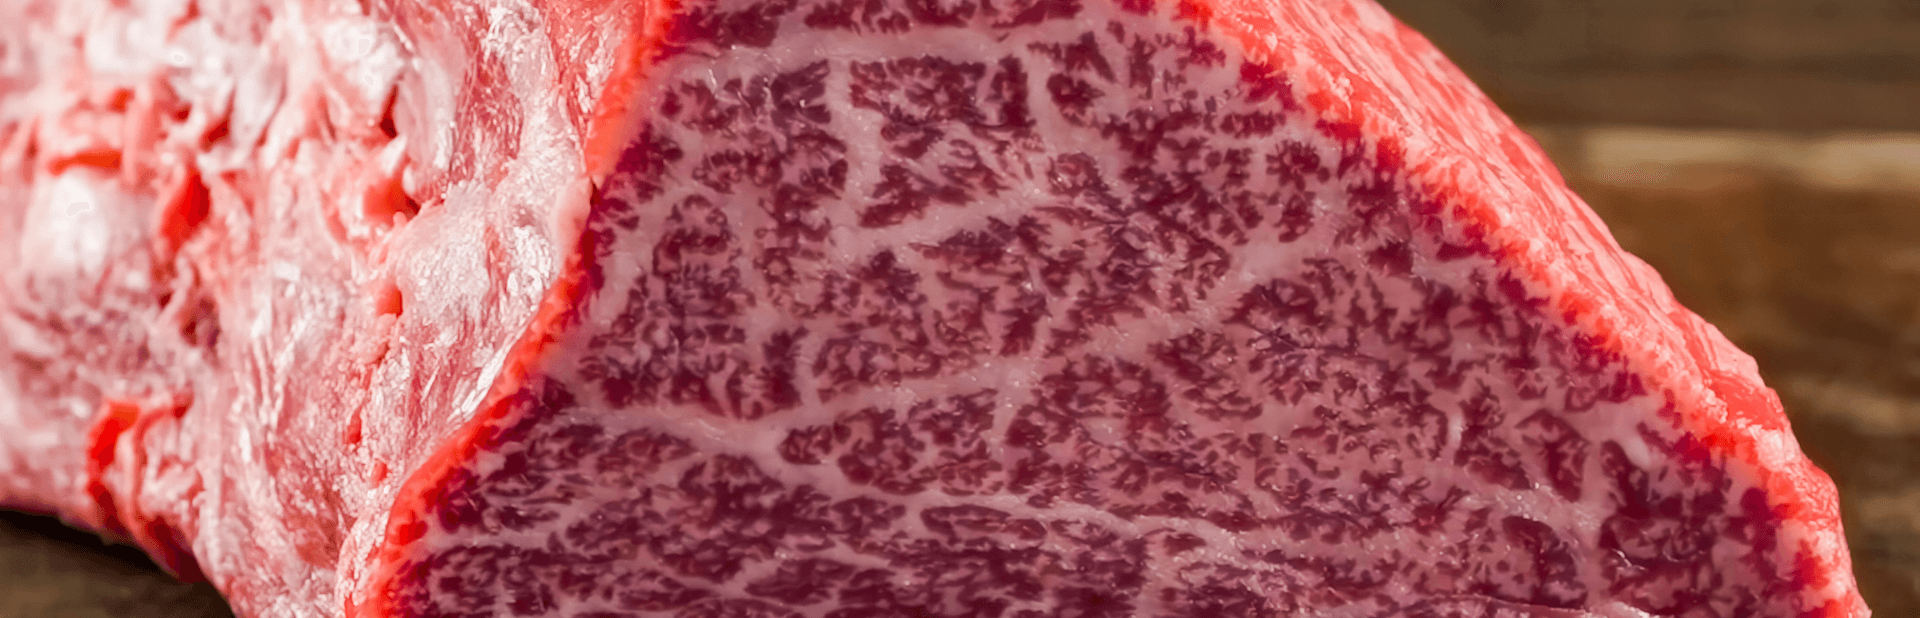 japanese wagyu beef raw meat steak on wooden board